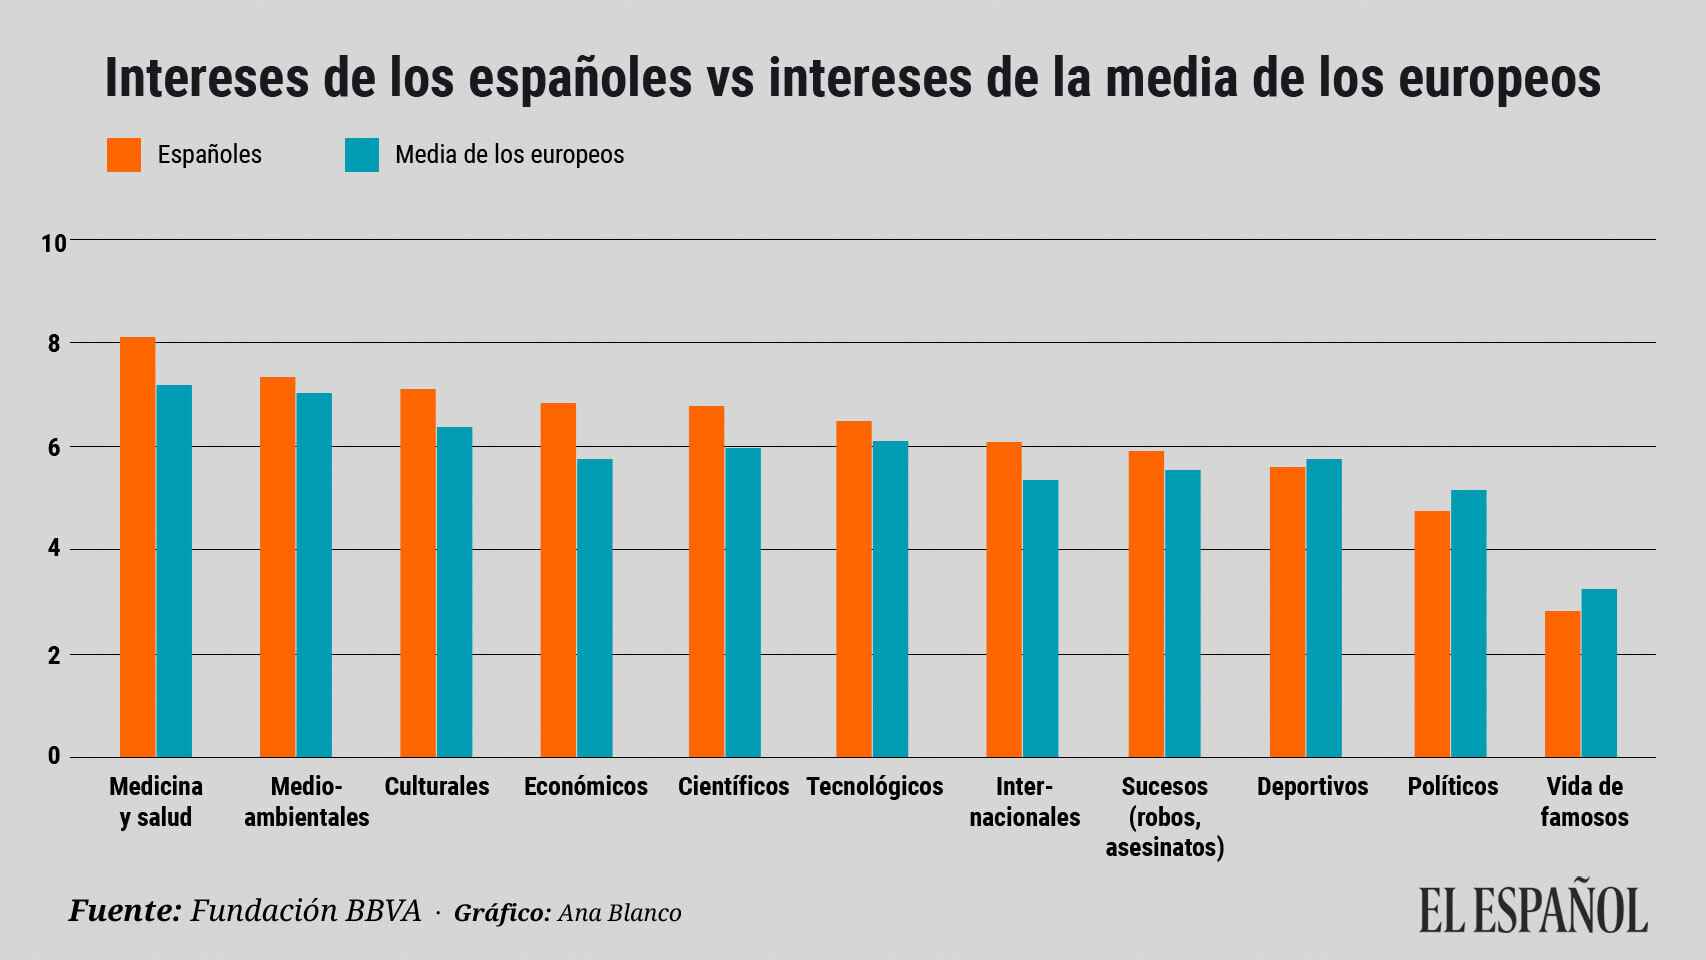 Gráfico con el interés de los españoles según el estudio realizado.